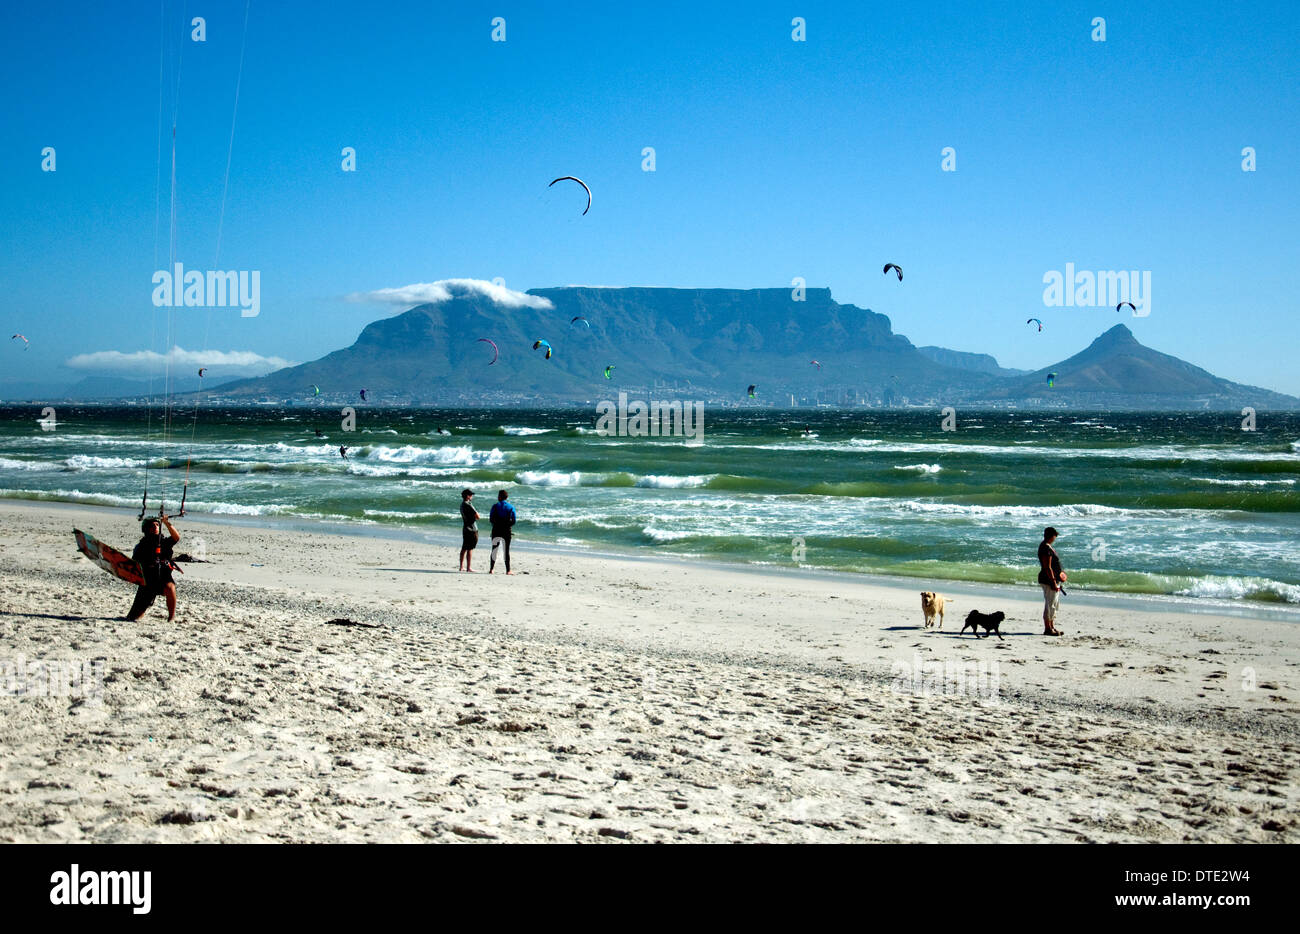 Emblématique de la ville du Cap Table Mountain vu de Blouberg Strand. Les planches ornent le ciel, et de la plage. Les gens détendue Banque D'Images